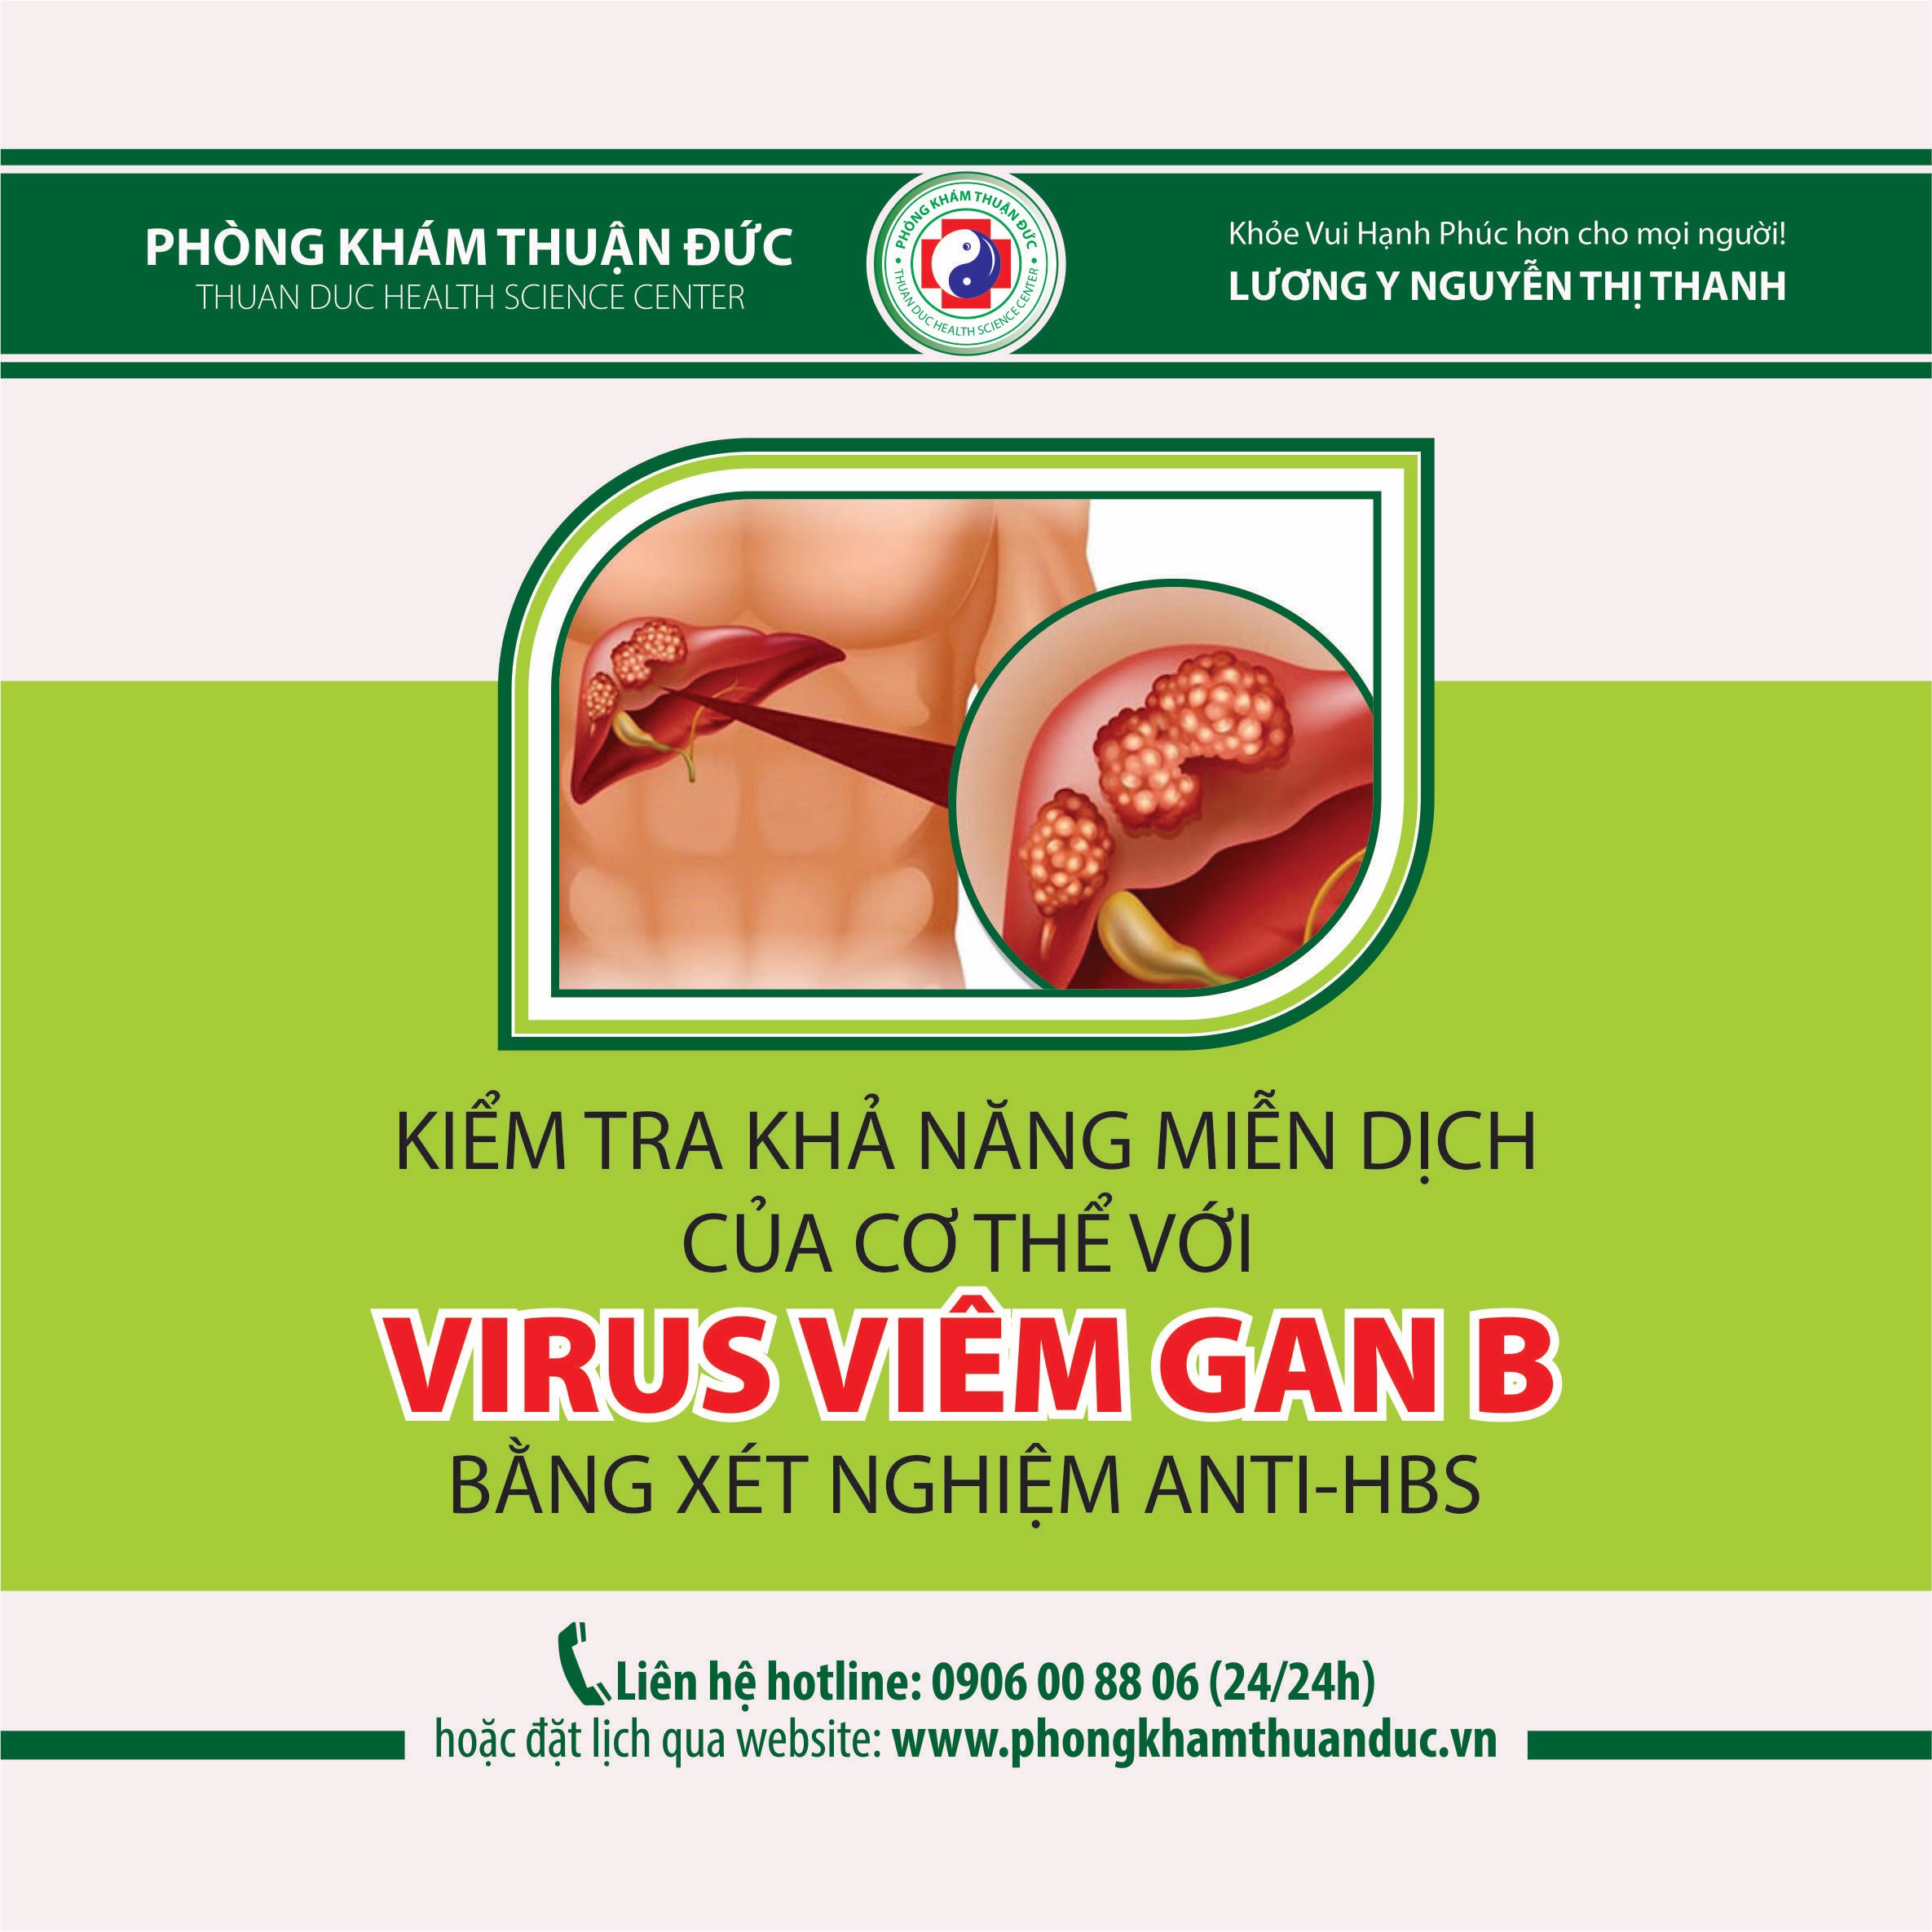 Kiểm tra khả năng miễn dịch của cơ thể với virus viêm gan B bằng xét nghiệm anti-HBs